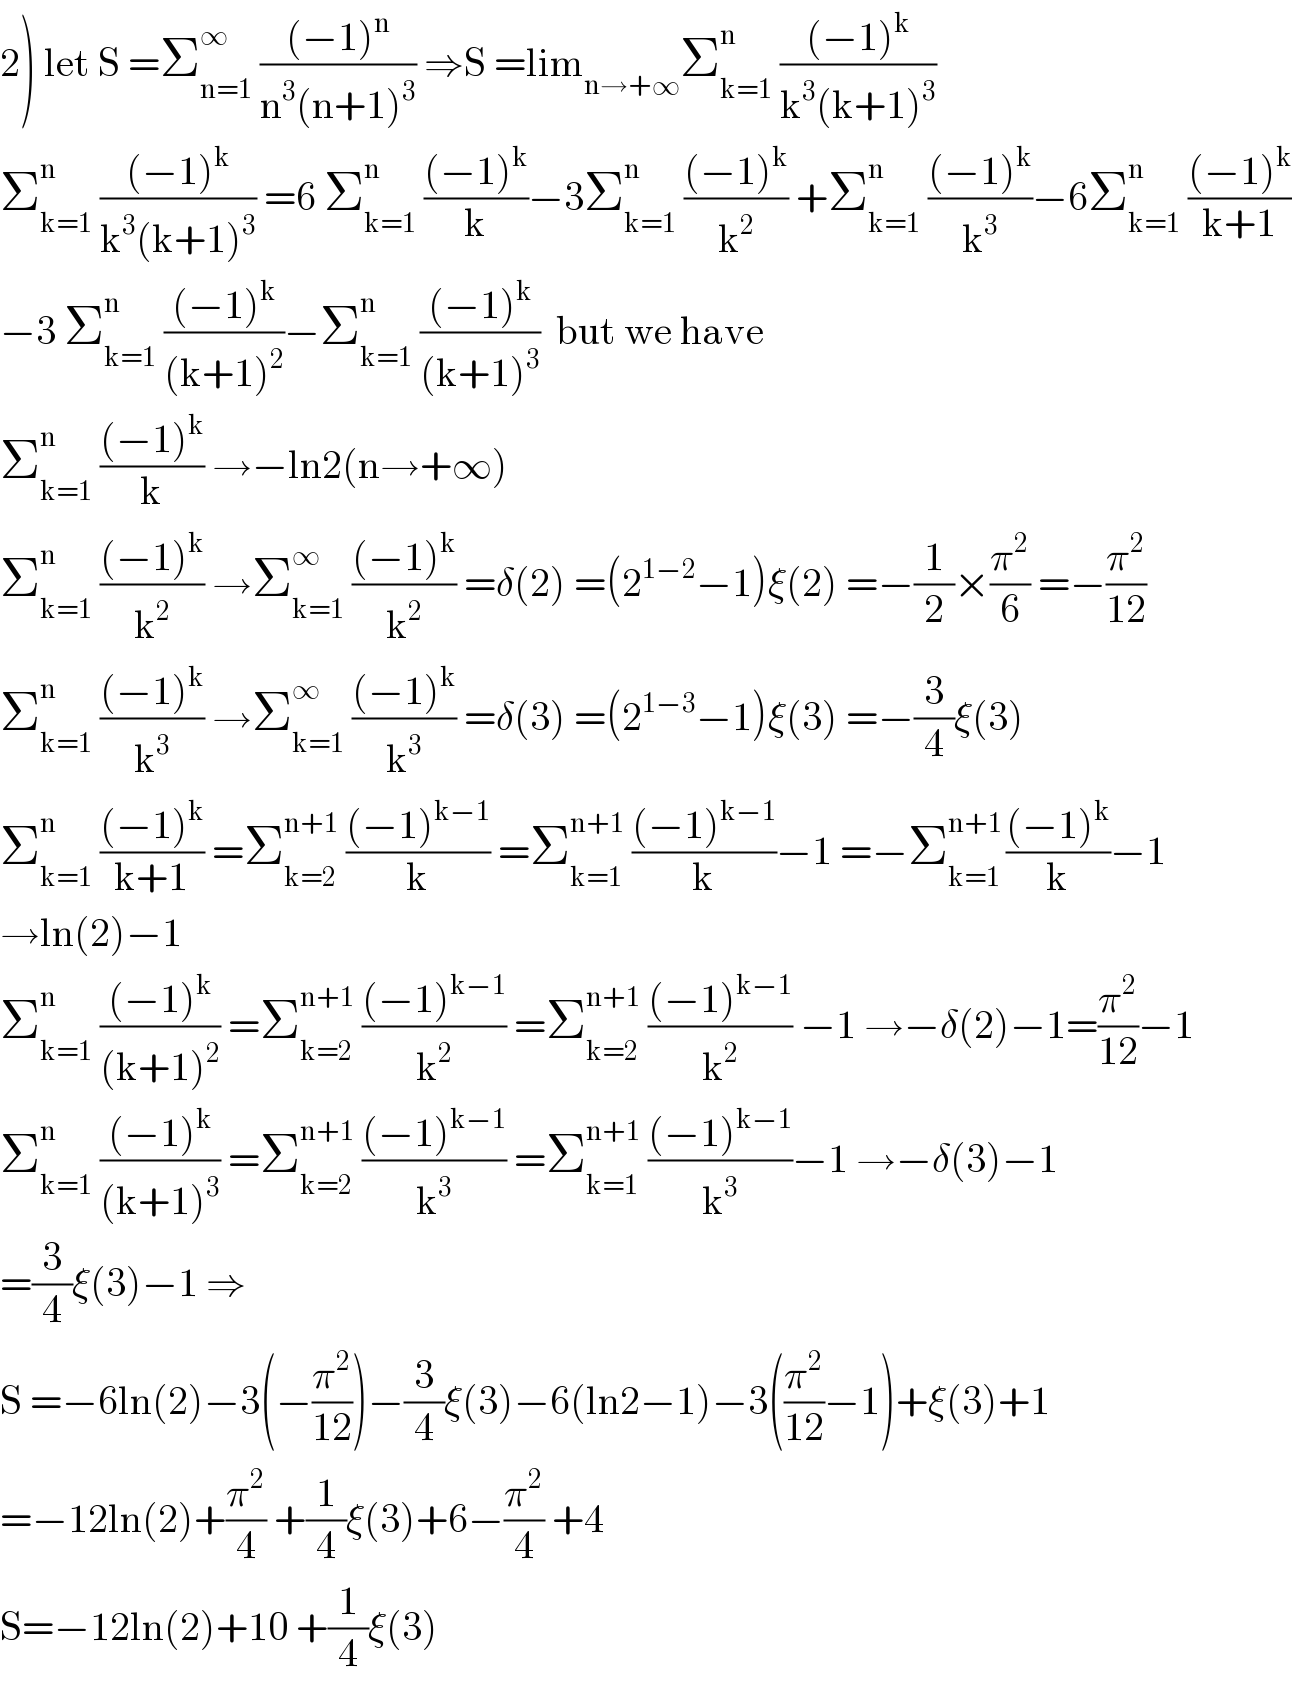 2) let S =Σ_(n=1) ^∞  (((−1)^n )/(n^3 (n+1)^3 )) ⇒S =lim_(n→+∞) Σ_(k=1) ^n  (((−1)^k )/(k^3 (k+1)^3 ))  Σ_(k=1) ^n  (((−1)^k )/(k^3 (k+1)^3 )) =6 Σ_(k=1) ^n  (((−1)^k )/k)−3Σ_(k=1) ^n  (((−1)^k )/k^2 ) +Σ_(k=1) ^n  (((−1)^k )/k^3 )−6Σ_(k=1) ^n  (((−1)^k )/(k+1))  −3 Σ_(k=1) ^n  (((−1)^k )/((k+1)^2 ))−Σ_(k=1) ^n  (((−1)^k )/((k+1)^3 ))  but we have  Σ_(k=1) ^(n )  (((−1)^k )/k) →−ln2(n→+∞)  Σ_(k=1) ^n  (((−1)^k )/k^2 ) →Σ_(k=1) ^∞  (((−1)^k )/k^2 ) =δ(2) =(2^(1−2) −1)ξ(2) =−(1/2)×(π^2 /6) =−(π^2 /(12))  Σ_(k=1) ^n  (((−1)^k )/k^3 ) →Σ_(k=1) ^∞  (((−1)^k )/k^3 ) =δ(3) =(2^(1−3) −1)ξ(3) =−(3/4)ξ(3)  Σ_(k=1) ^n  (((−1)^k )/(k+1)) =Σ_(k=2) ^(n+1)  (((−1)^(k−1) )/k) =Σ_(k=1) ^(n+1)  (((−1)^(k−1) )/k)−1 =−Σ_(k=1) ^(n+1 ) (((−1)^k )/k)−1  →ln(2)−1  Σ_(k=1) ^n  (((−1)^k )/((k+1)^2 )) =Σ_(k=2) ^(n+1)  (((−1)^(k−1) )/k^2 ) =Σ_(k=2) ^(n+1)  (((−1)^(k−1) )/k^2 ) −1 →−δ(2)−1=(π^2 /(12))−1  Σ_(k=1) ^n  (((−1)^k )/((k+1)^3 )) =Σ_(k=2) ^(n+1)  (((−1)^(k−1) )/k^3 ) =Σ_(k=1) ^(n+1)  (((−1)^(k−1) )/k^3 )−1 →−δ(3)−1  =(3/4)ξ(3)−1 ⇒  S =−6ln(2)−3(−(π^2 /(12)))−(3/4)ξ(3)−6(ln2−1)−3((π^2 /(12))−1)+ξ(3)+1  =−12ln(2)+(π^2 /4) +(1/4)ξ(3)+6−(π^2 /4) +4  S=−12ln(2)+10 +(1/4)ξ(3)  